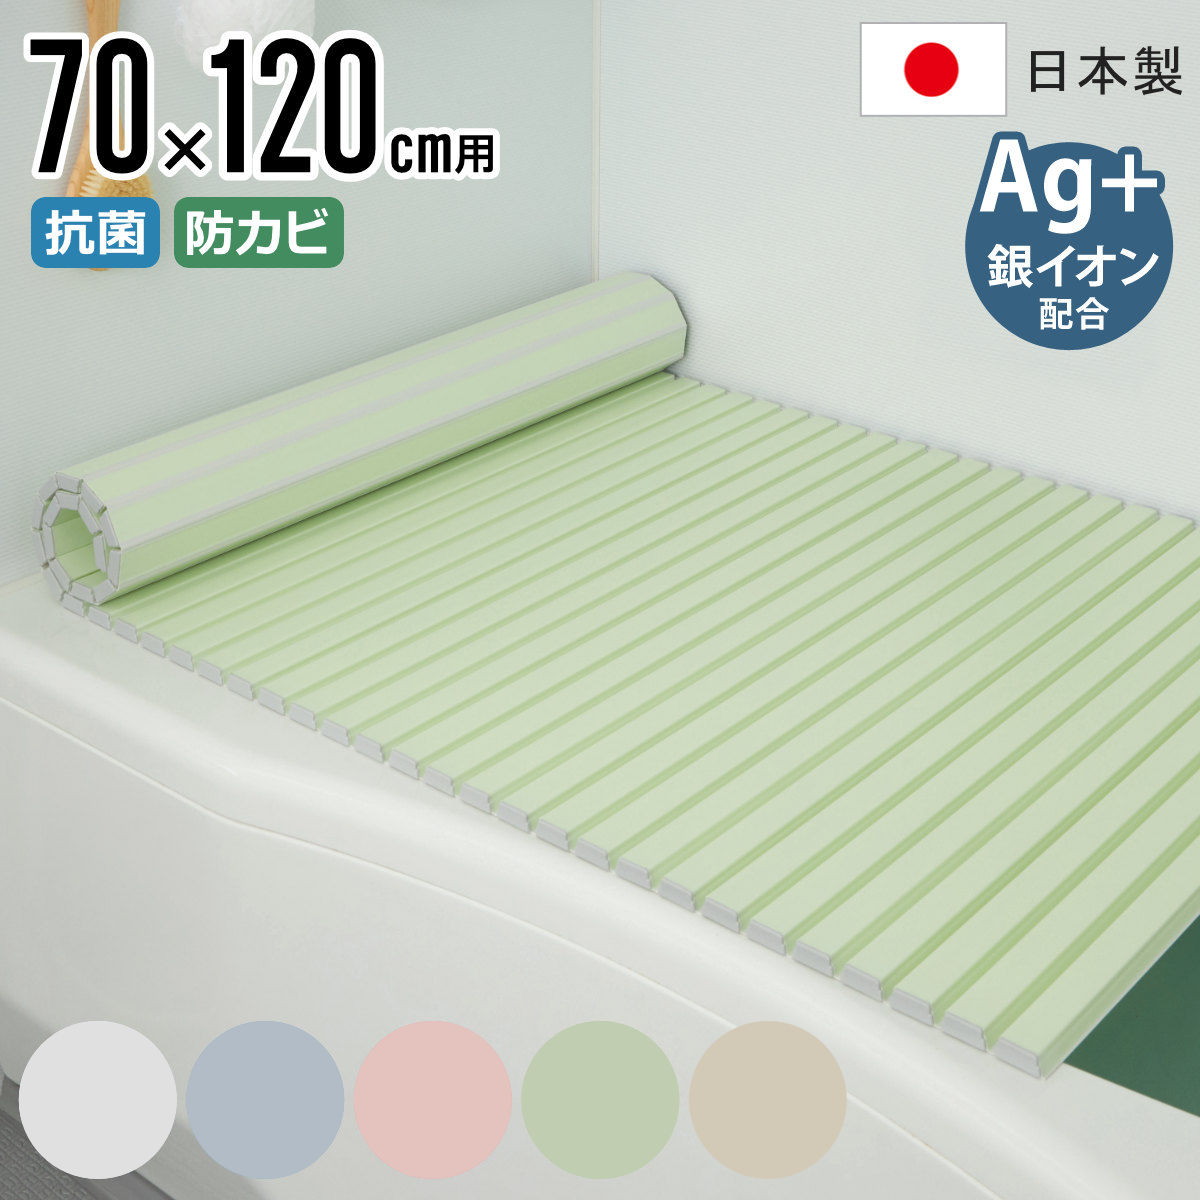 風呂ふた シャッター Ag抗菌 日本製 70×120cm 用 M-12 実寸70×122cm